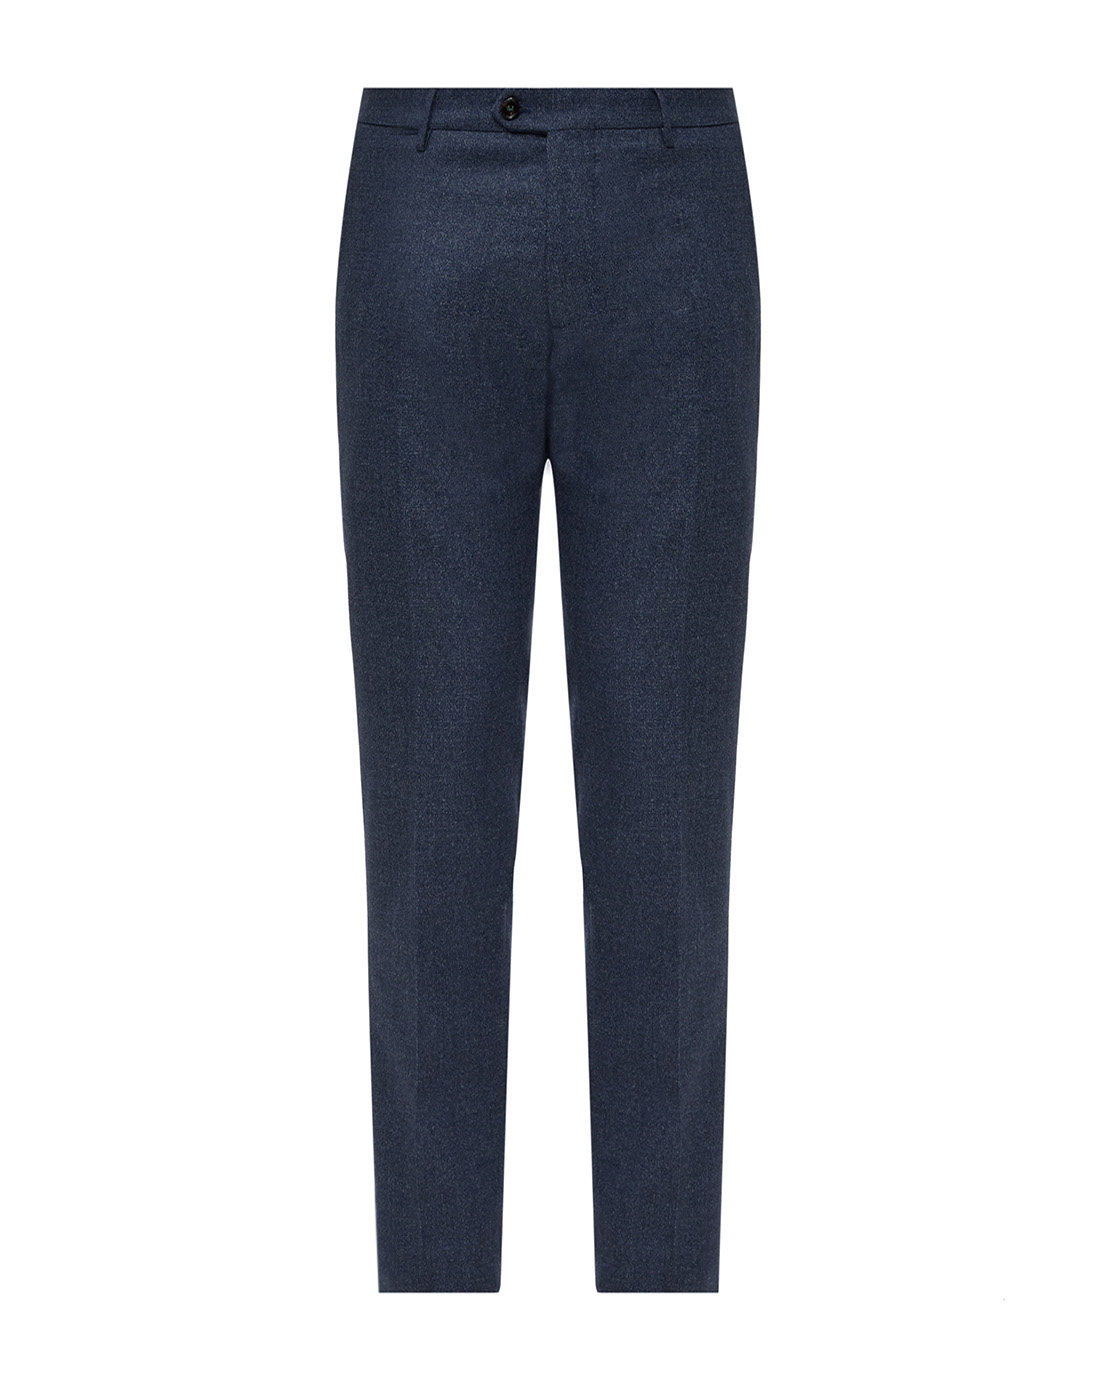 Мужские синие шерстяные брюки Berwich SZIP/1 ALC_GB1674_BLUE-1